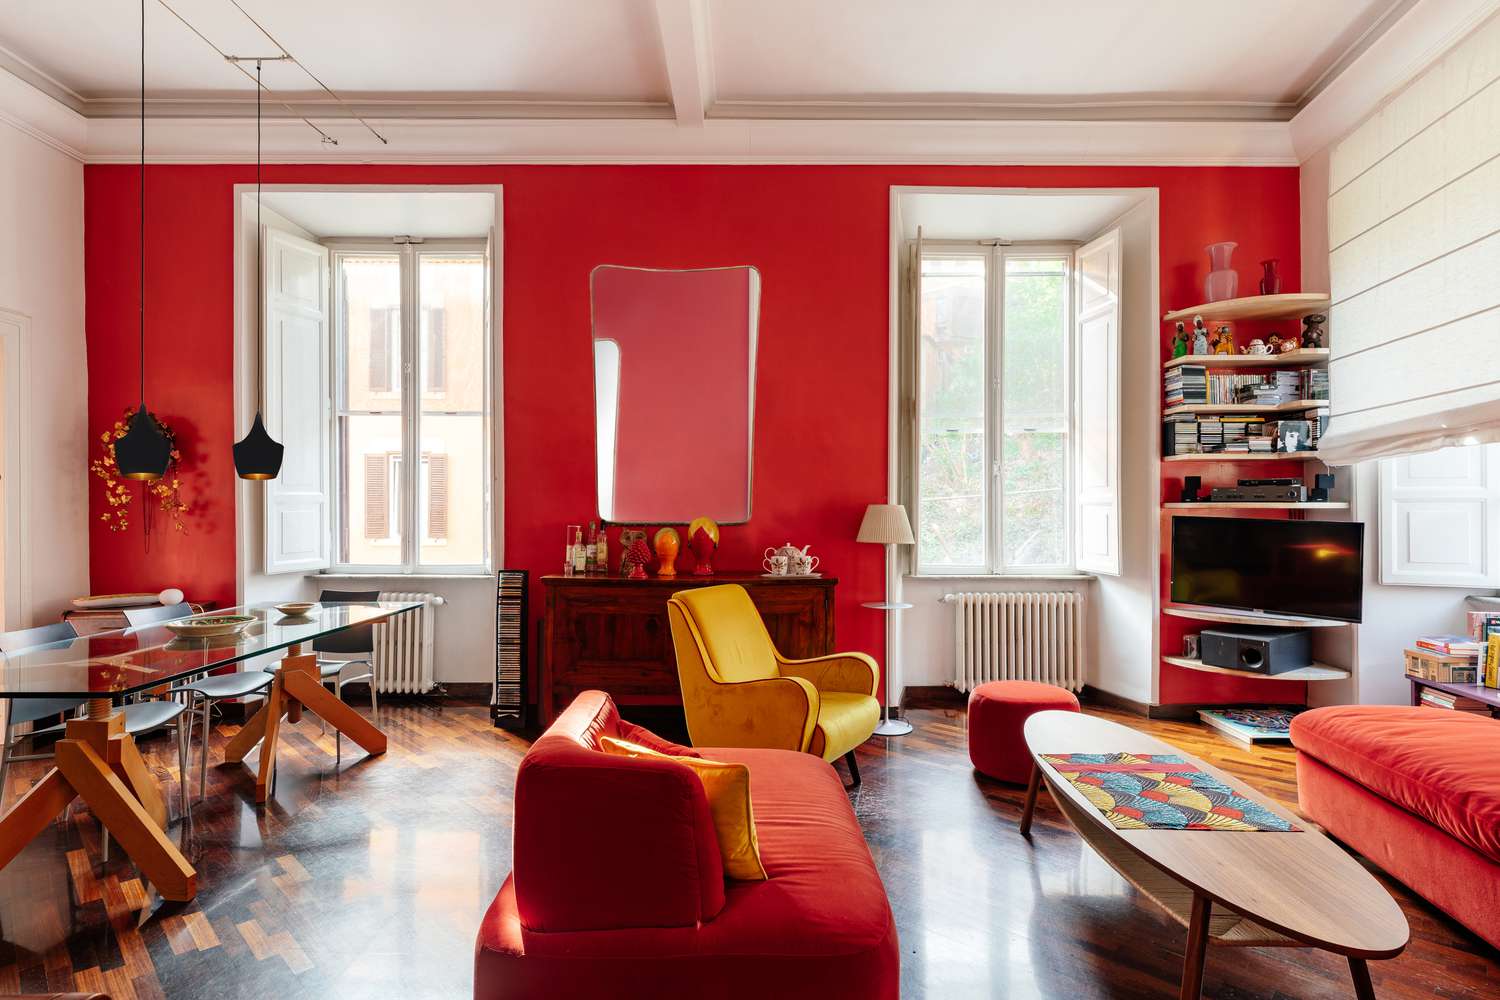 Luz natural enchendo o cômodo pintado de vermelho com duas janelas